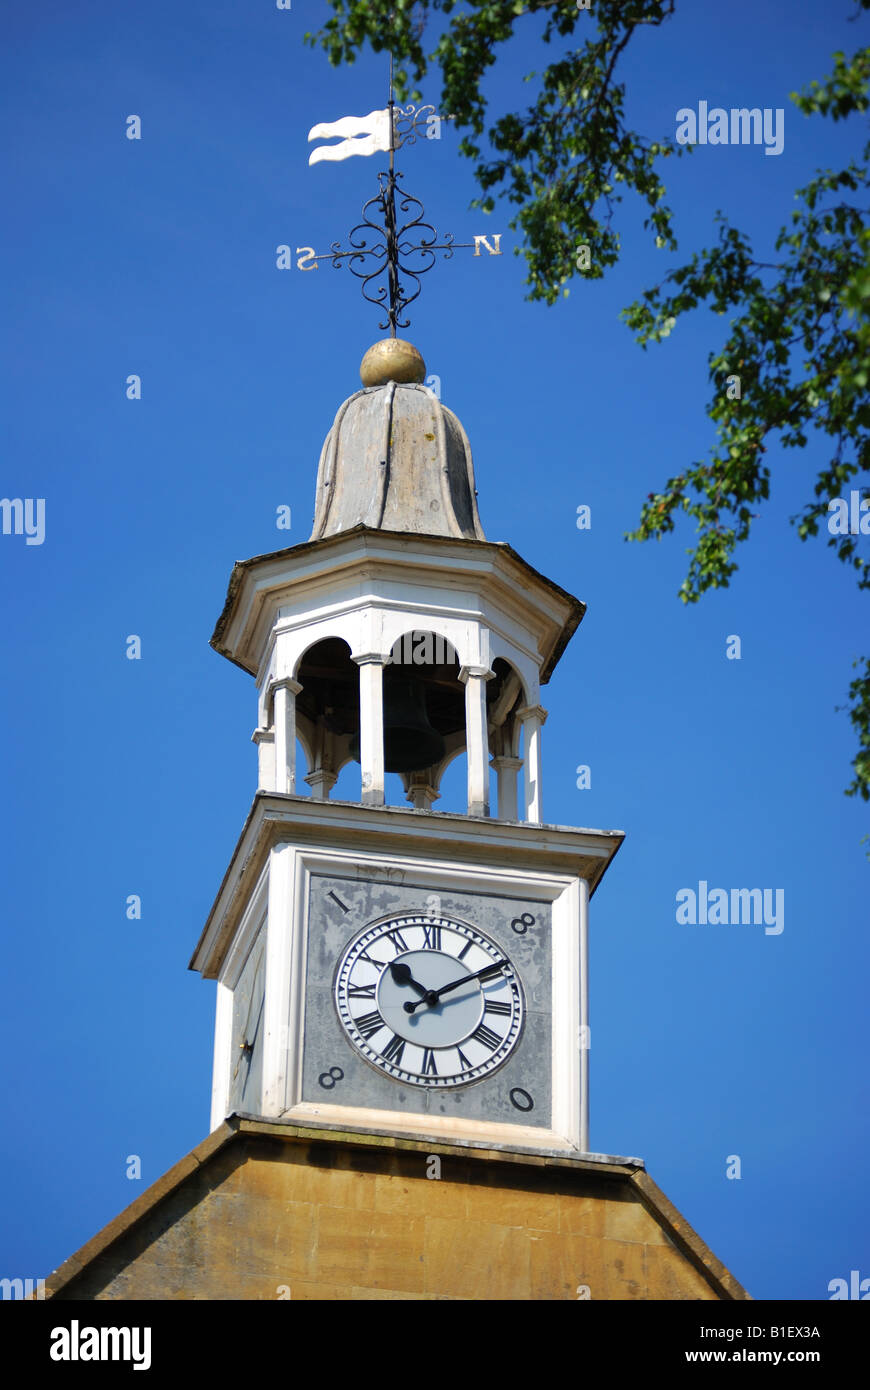 Tour de l'horloge, de la mairie, rue Haute, Chipping Campden, Cotswolds, Gloucestershire, Angleterre, Royaume-Uni Banque D'Images